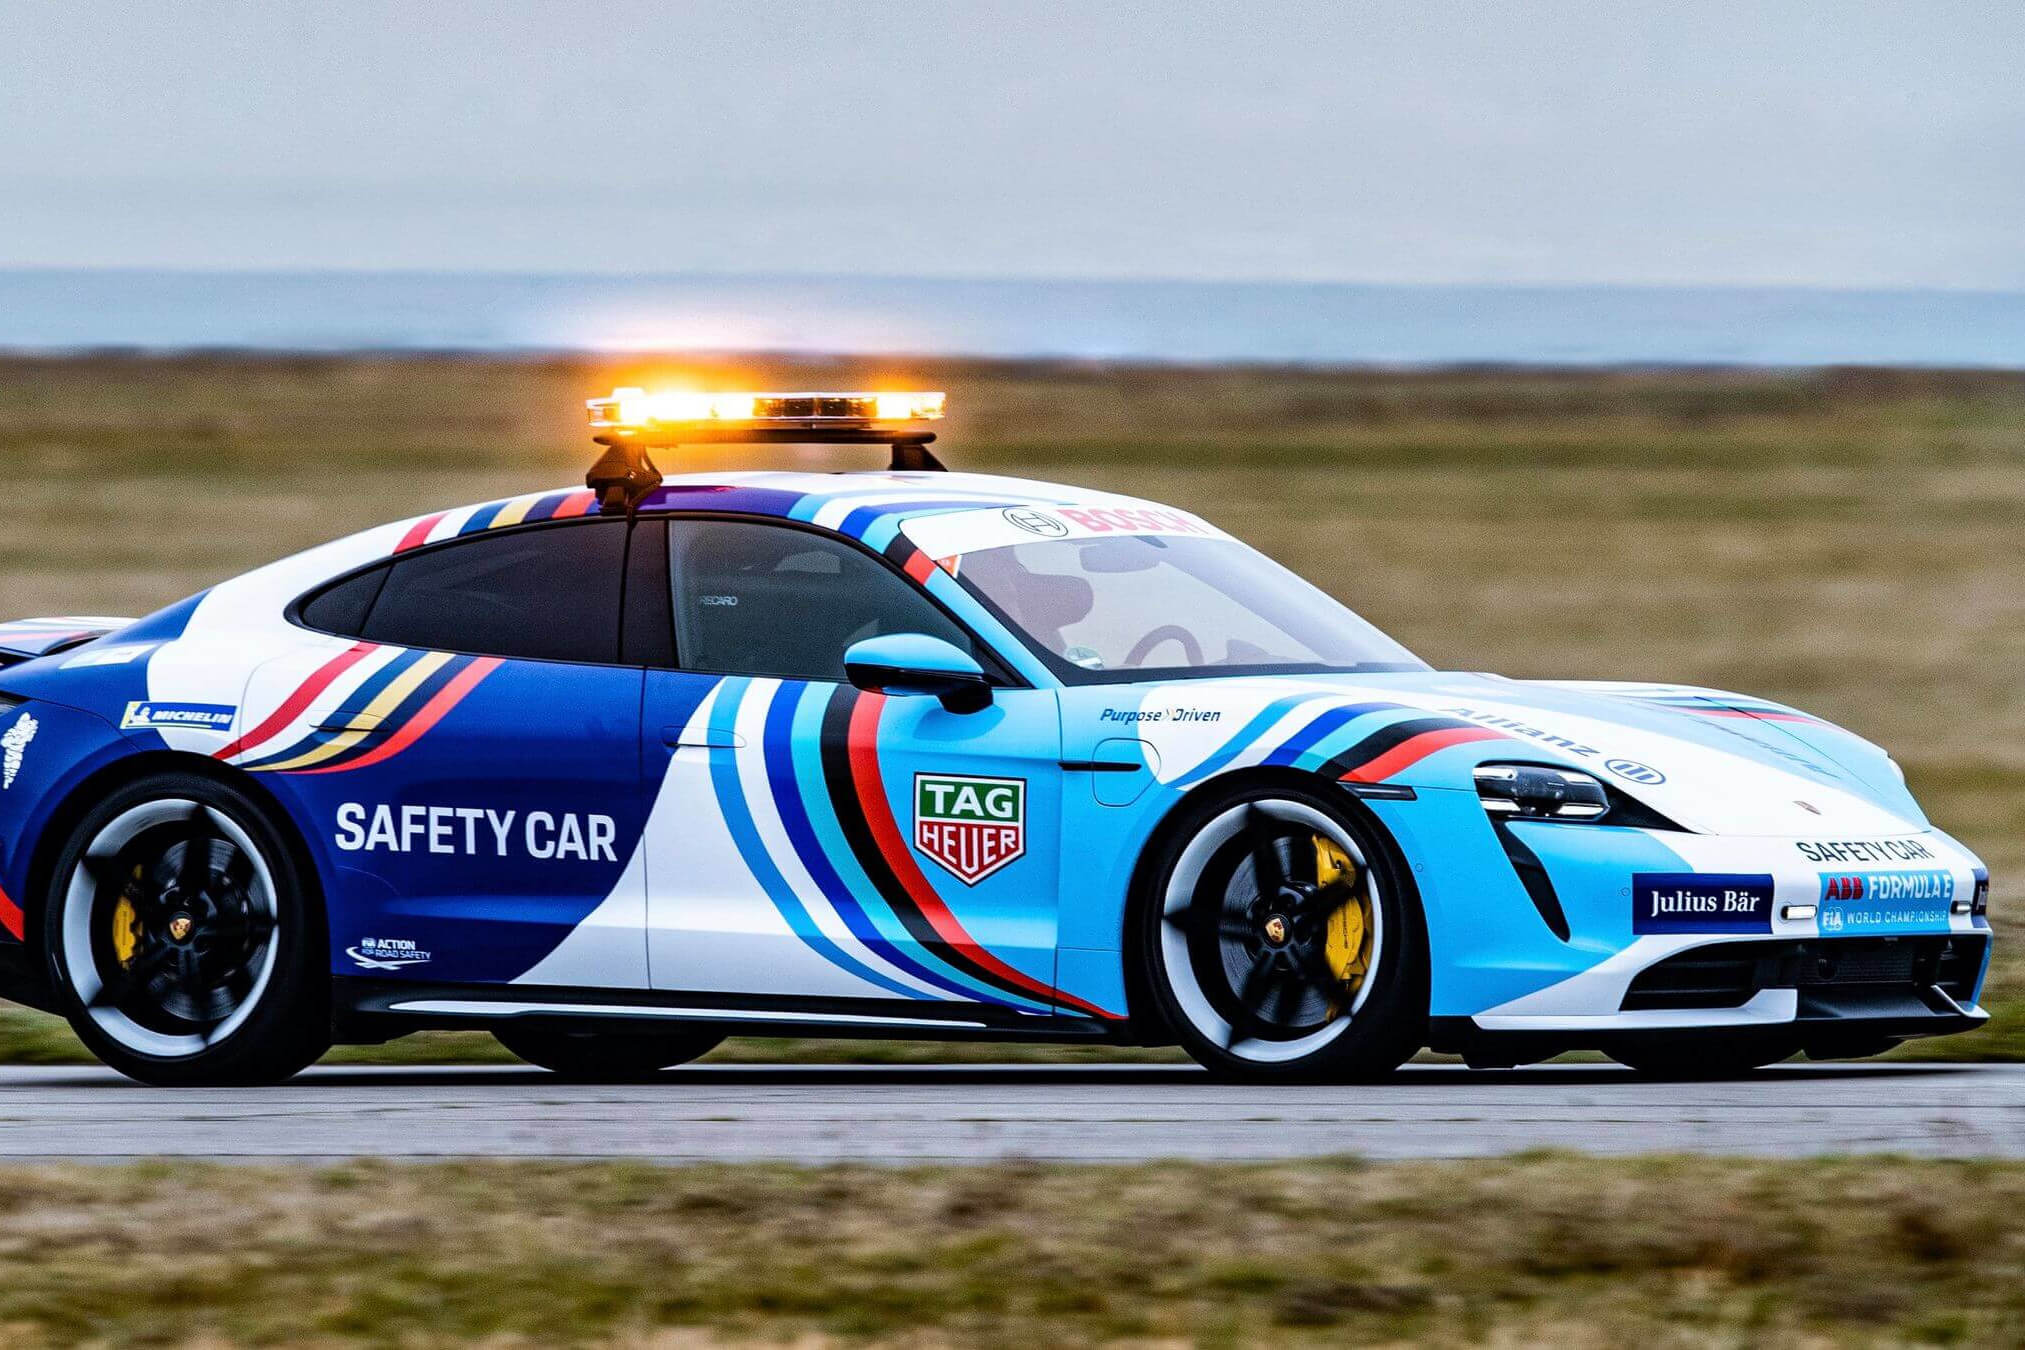 Porsche_Taycan_Safety-Car-side-view